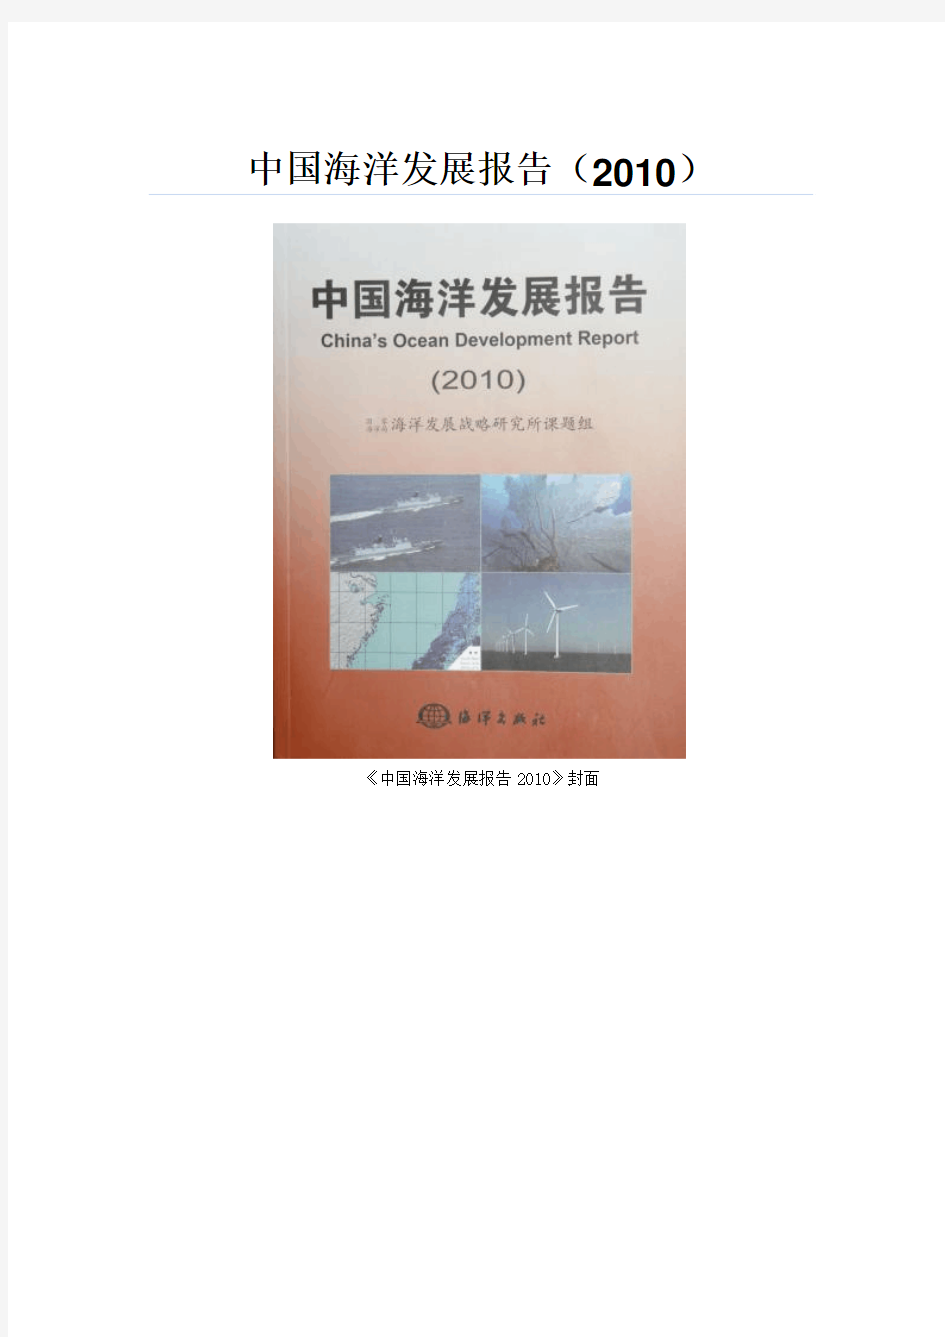 国家海洋局发布2010中国海洋发展报告